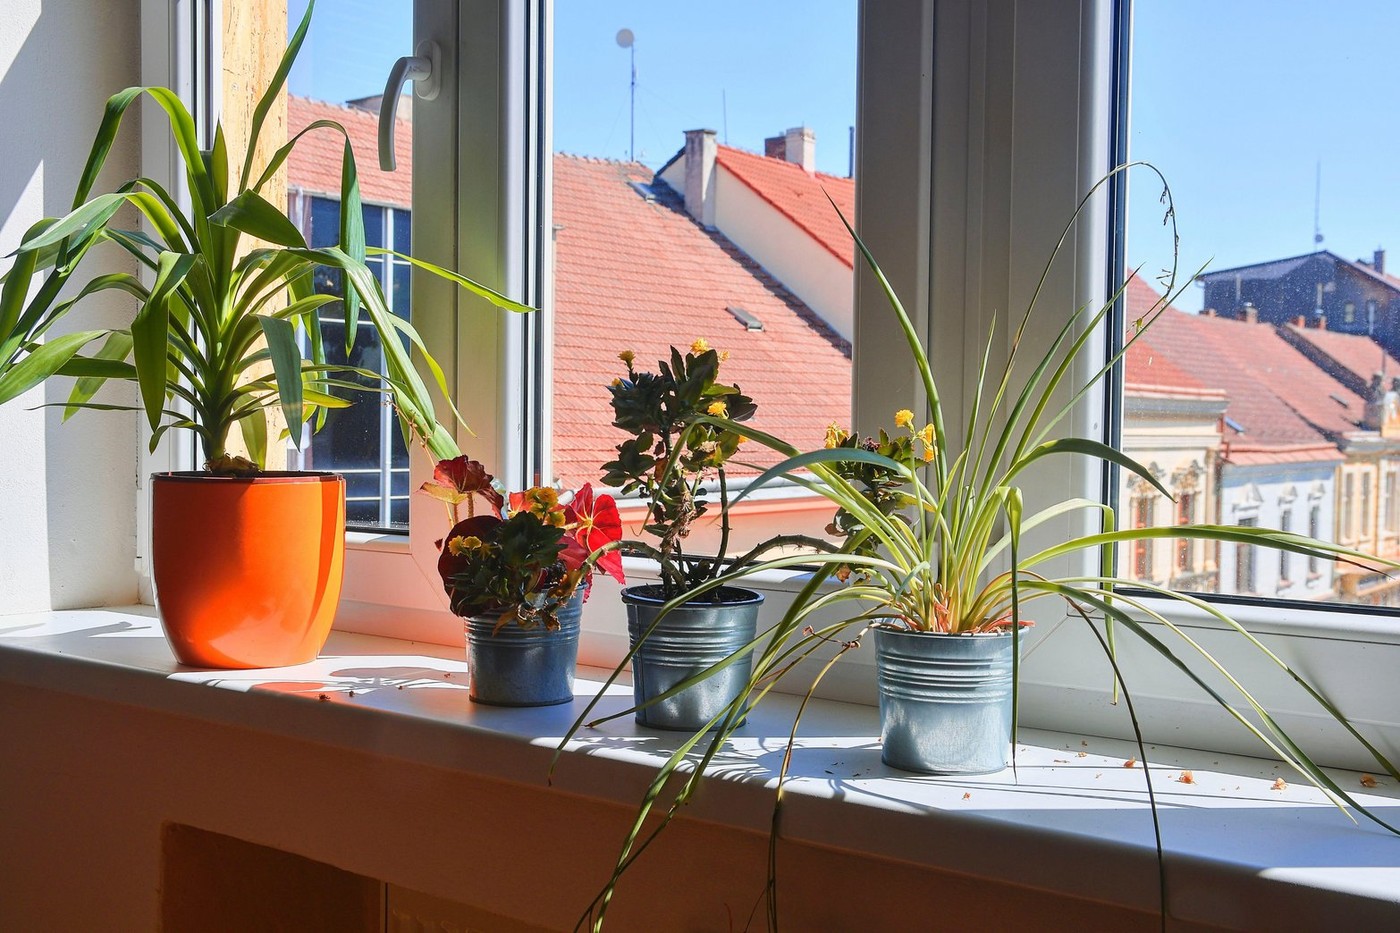 Ako nemate klimu, ova biljka može da smanji temperaturu u stanu